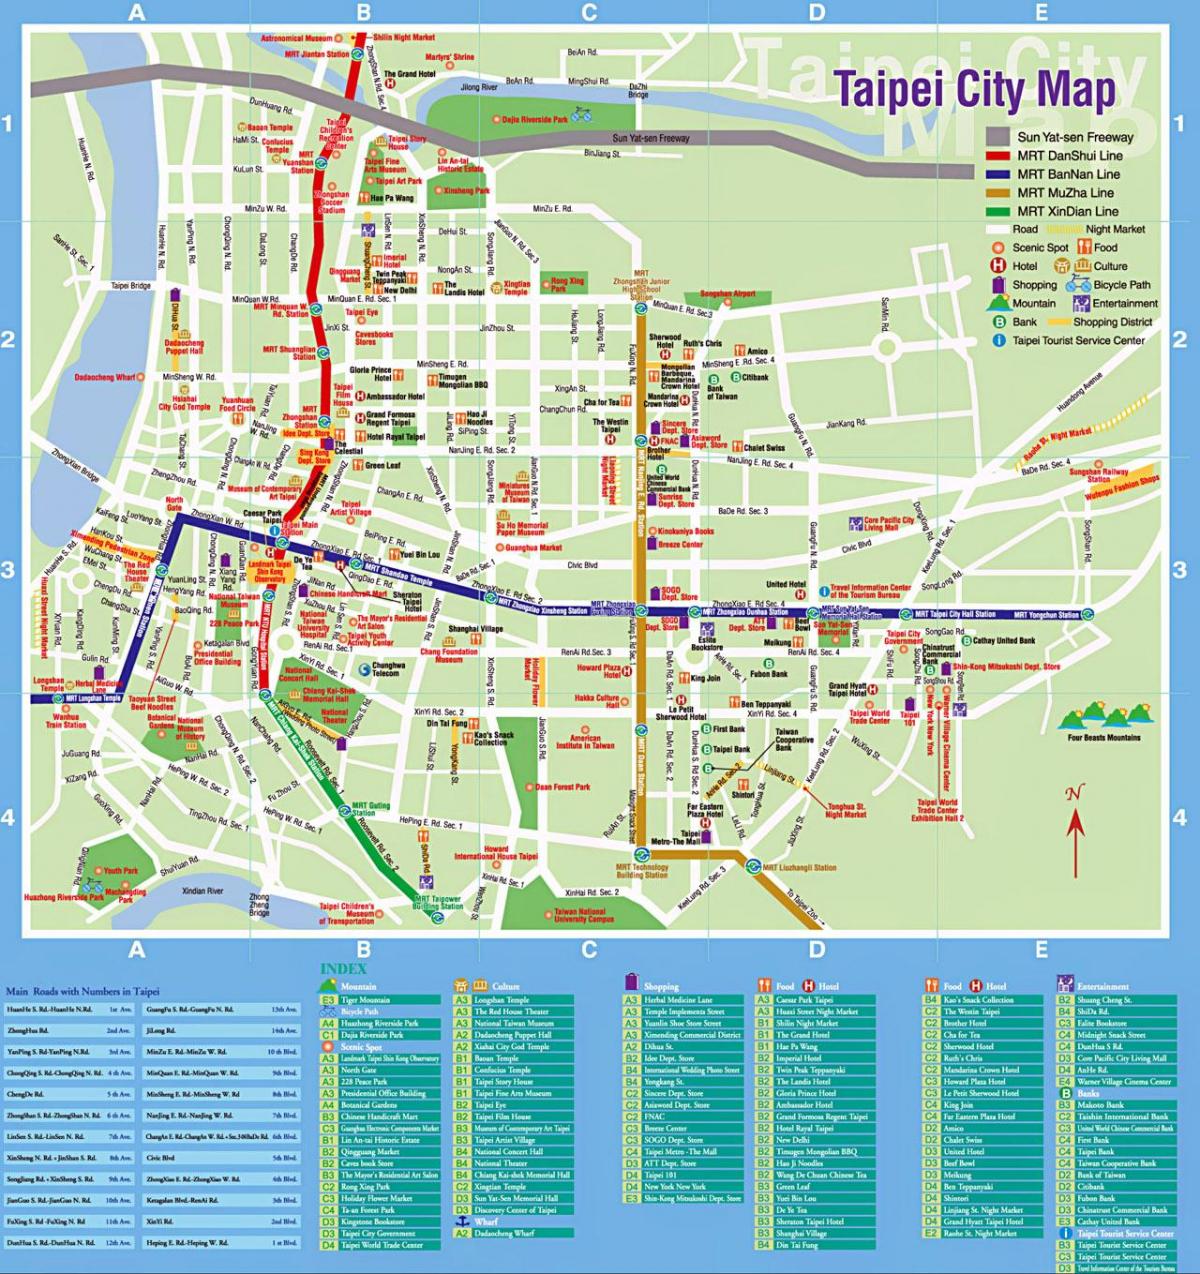 Taipei city turizm haritası 